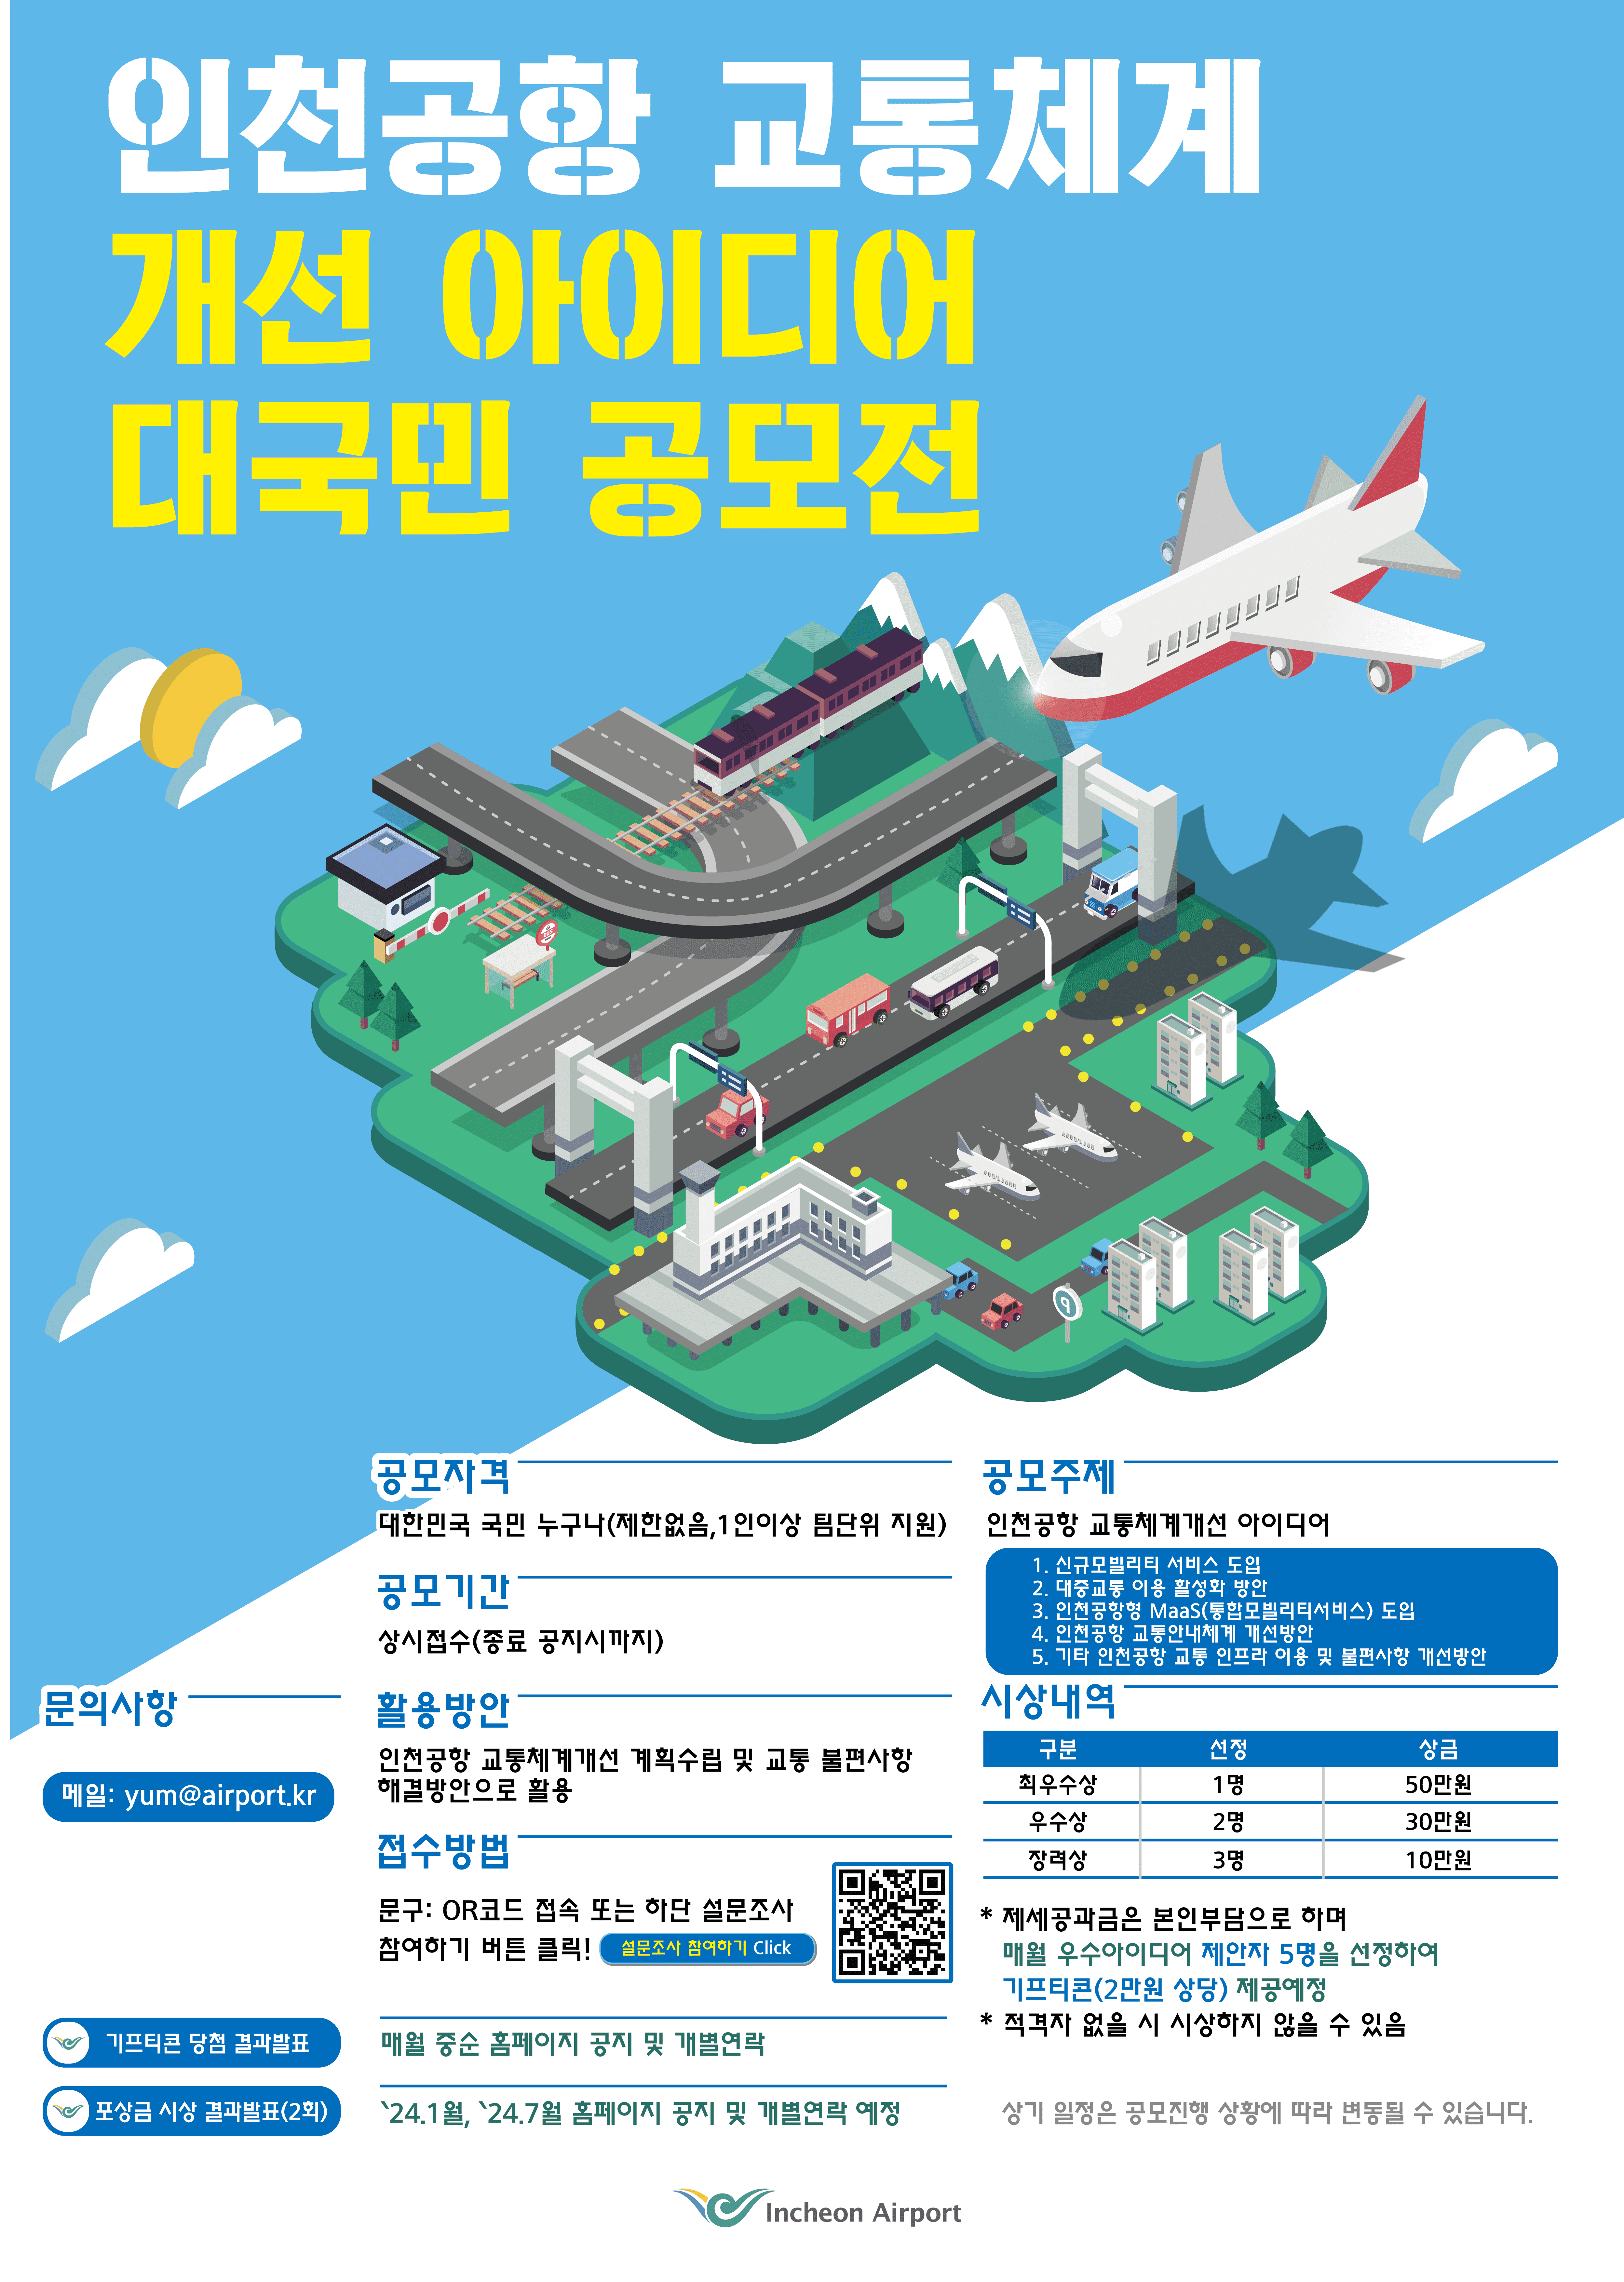 인천공항 교통체계개선 아이디어 공모전